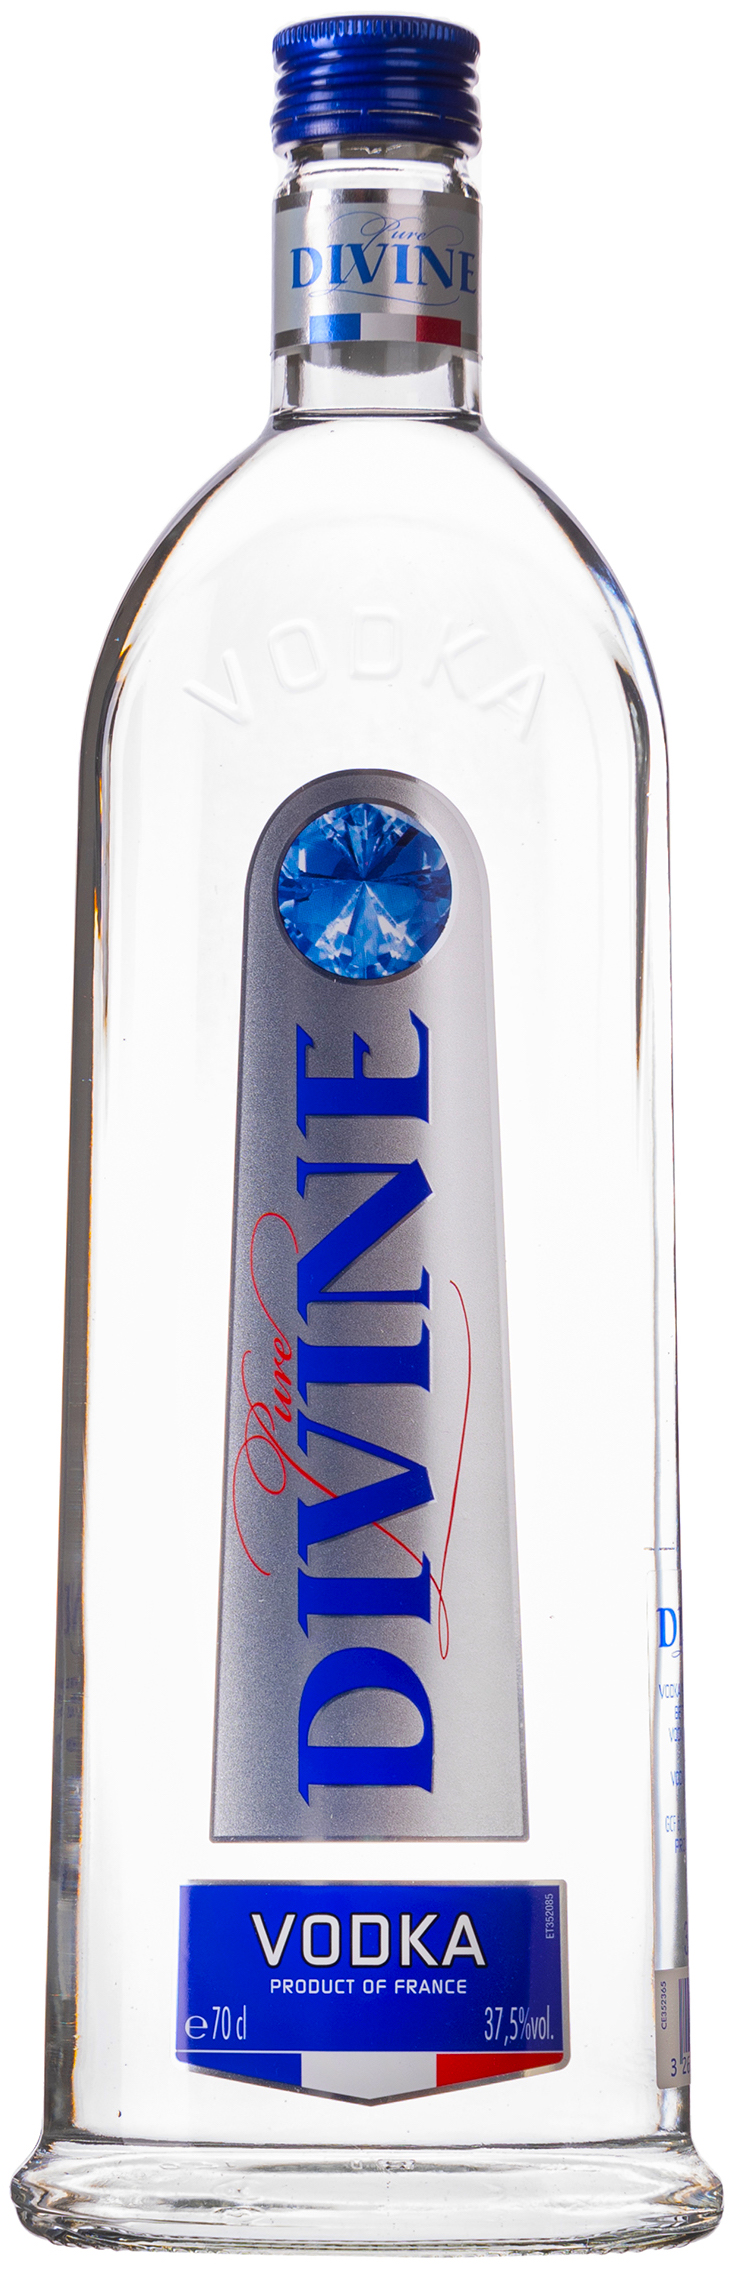 Pure Divine Vodka 37,5% vol. 0,7L 